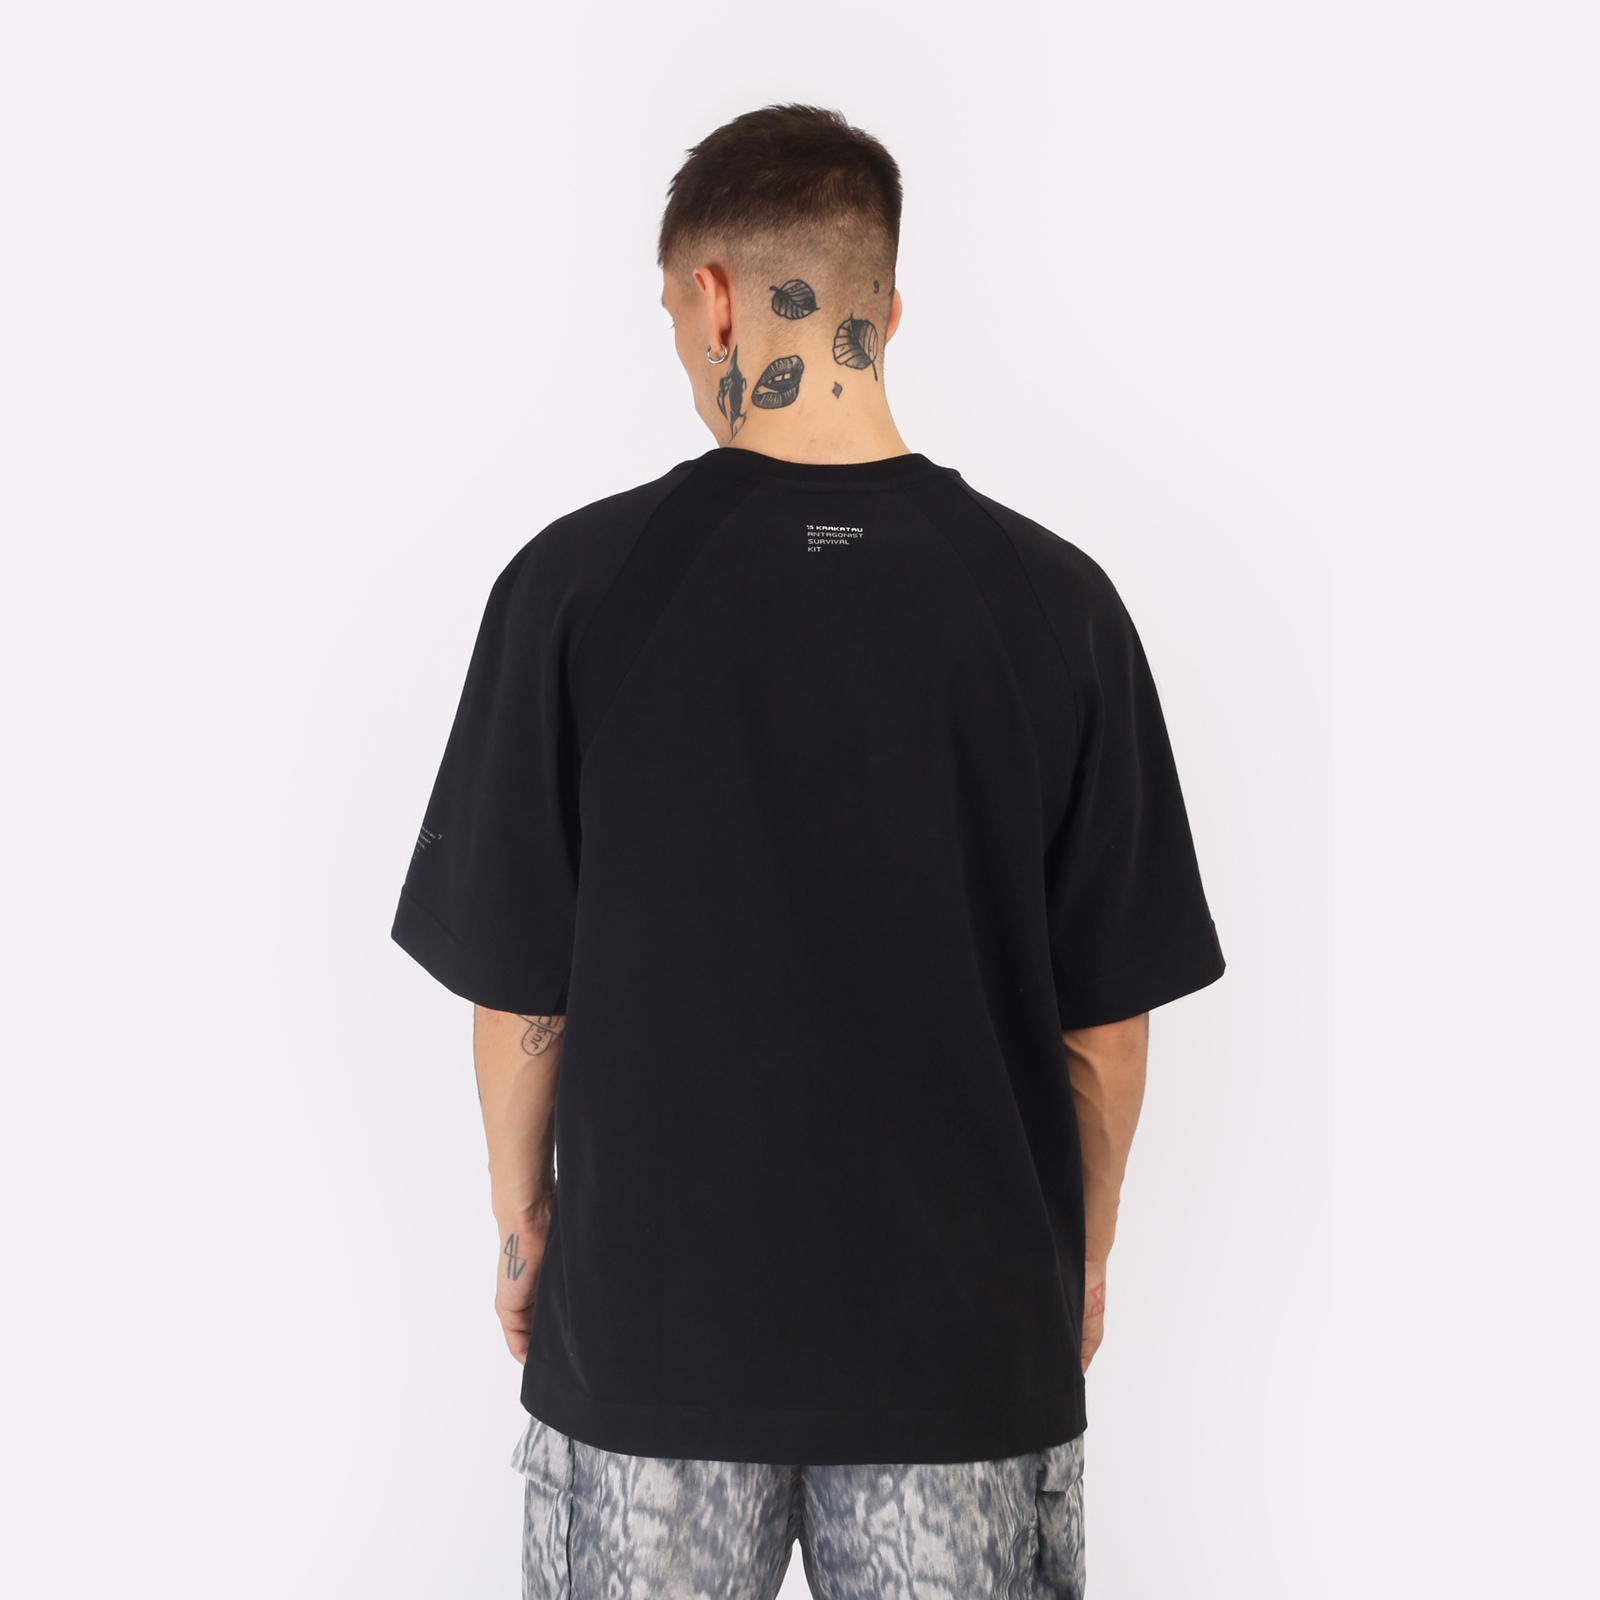 мужская футболка KRAKATAU Tm114  (Tm114-1-черный)  - цена, описание, фото 2